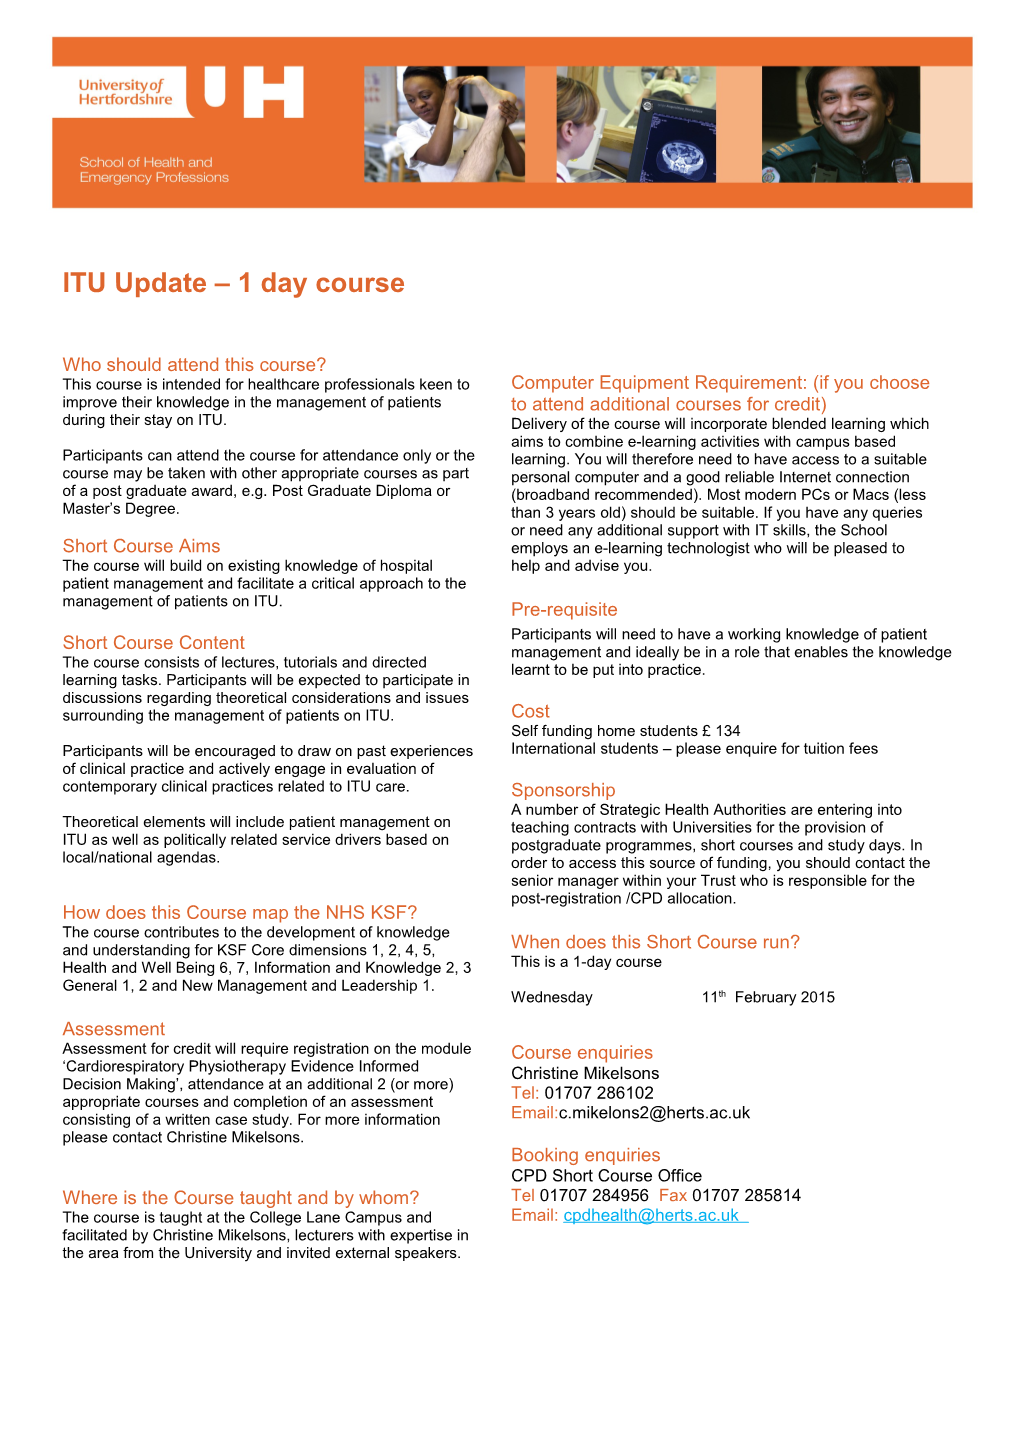 ITU Update 1 Day Course